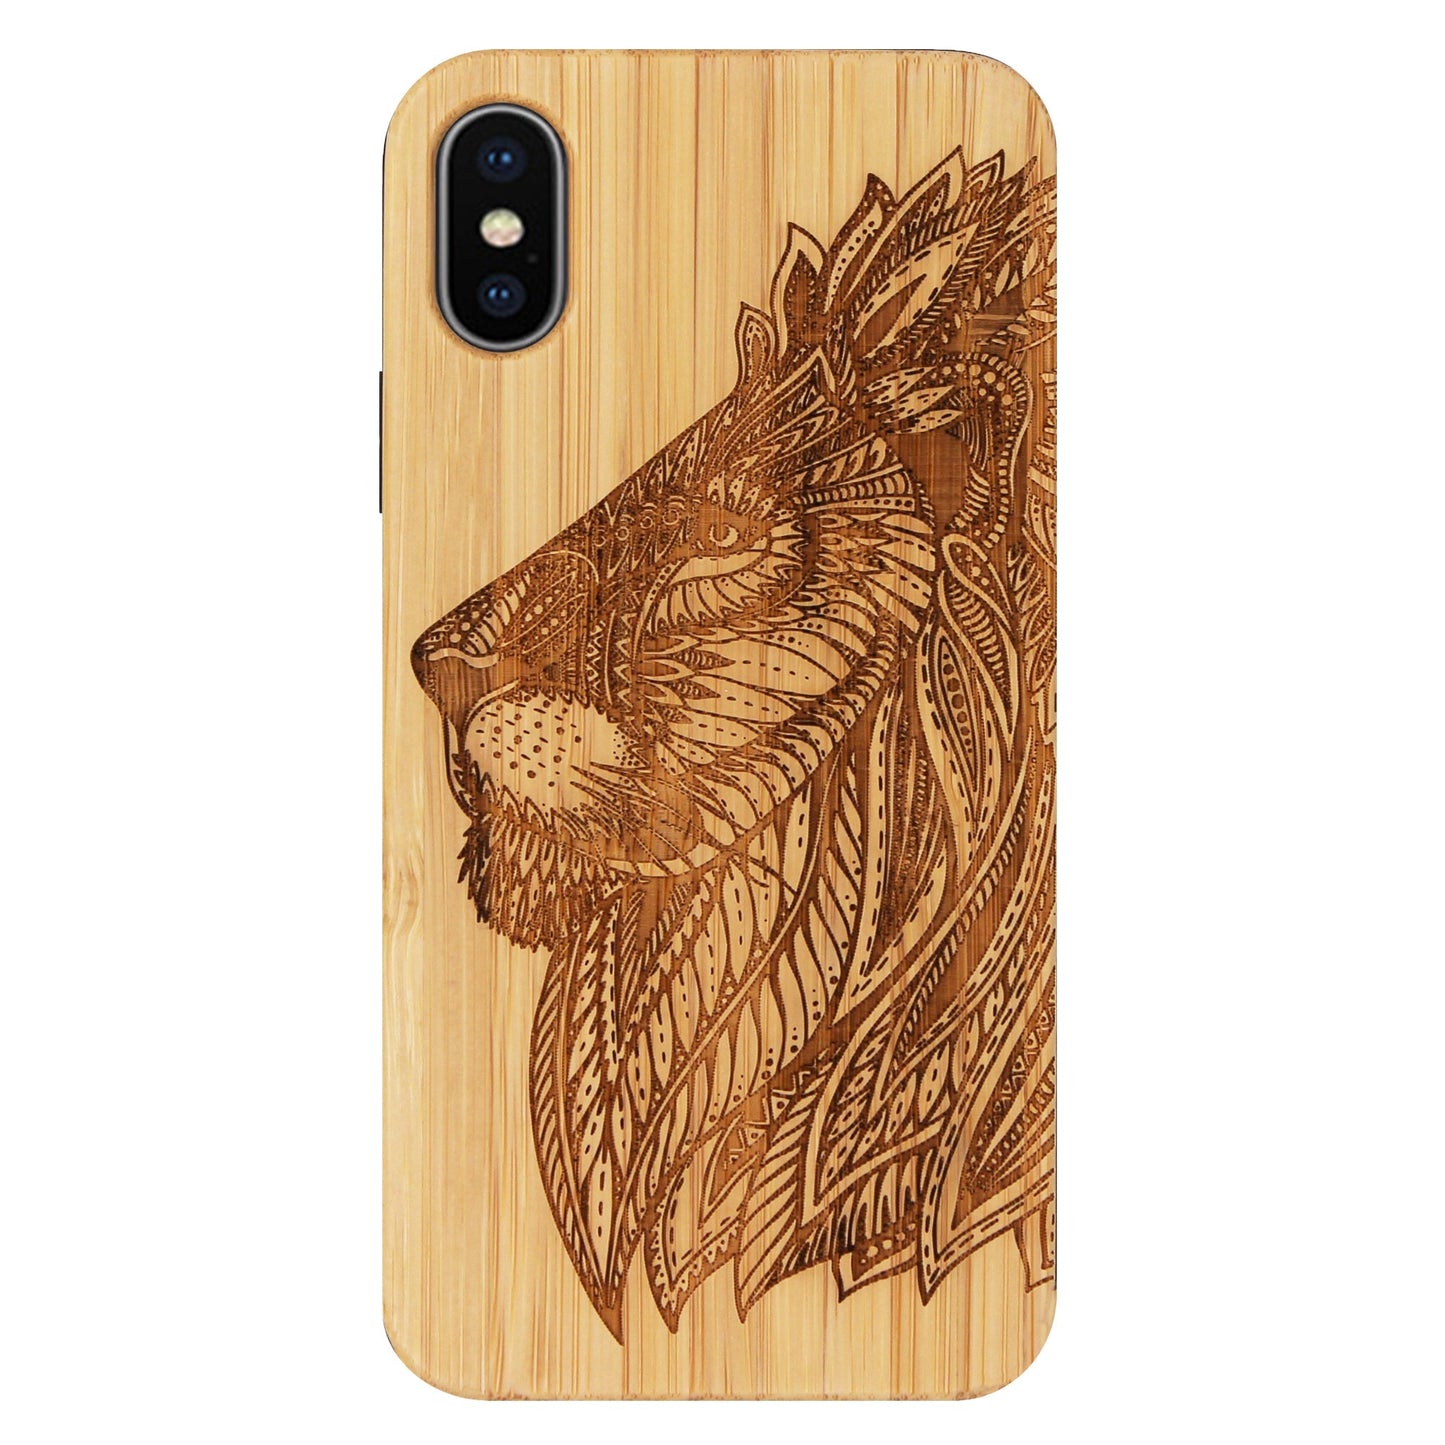 Coque Eden lion en bambou pour iPhone XS Max